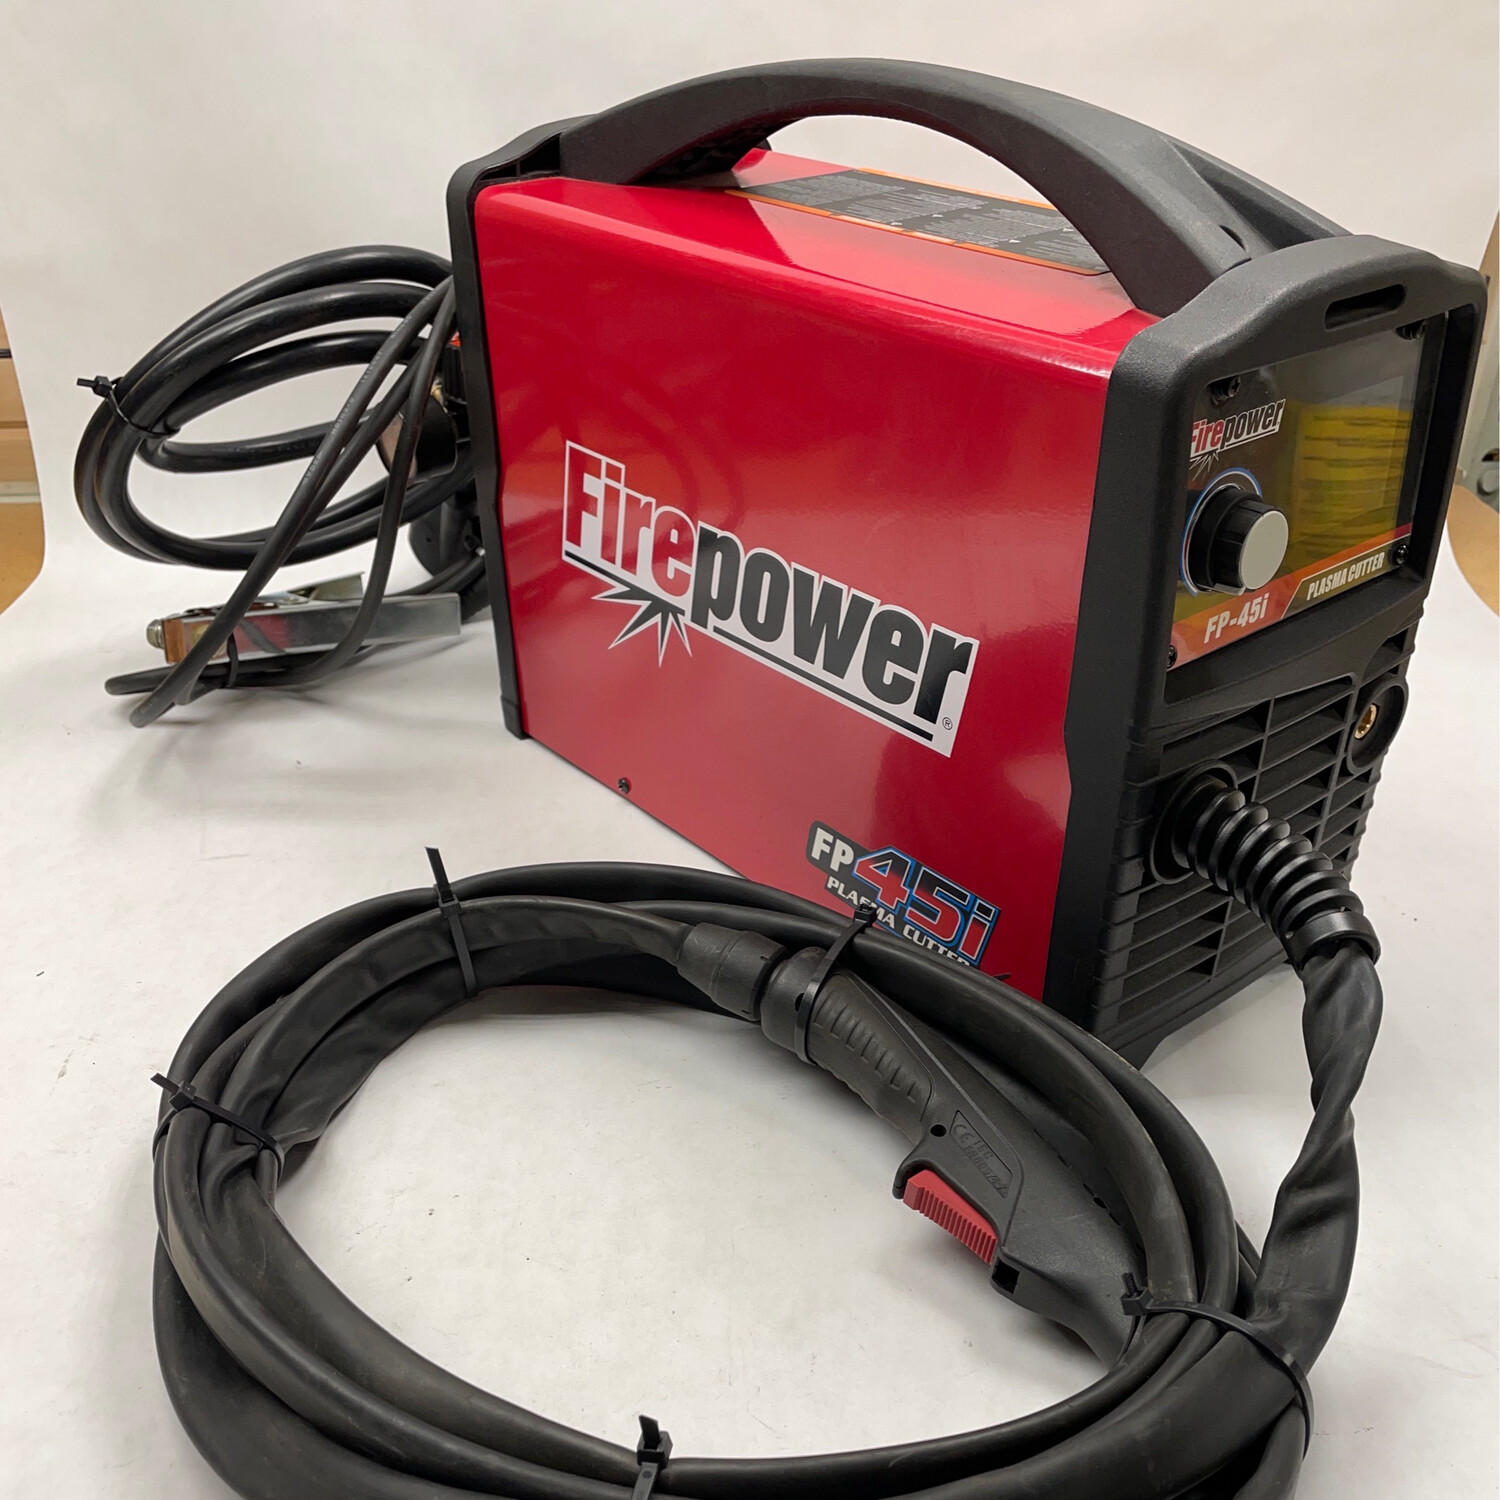 Firepower FP45i Plasma Cutter